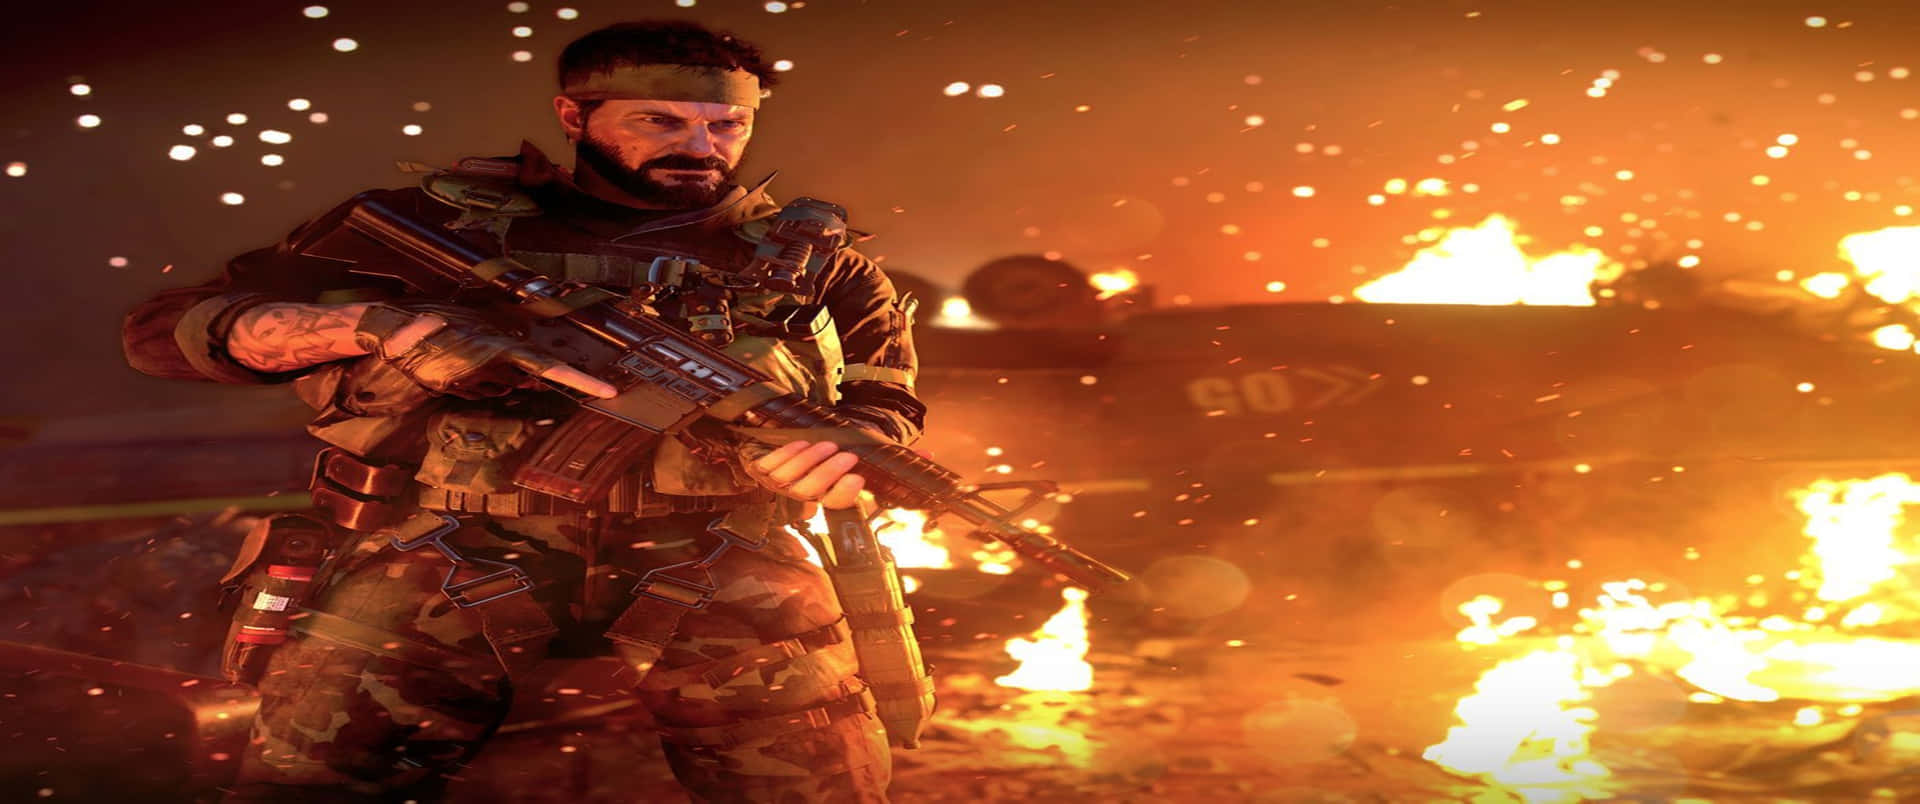 3440x1440pbrennender Hintergrund Von Call Of Duty Black Ops Cold War